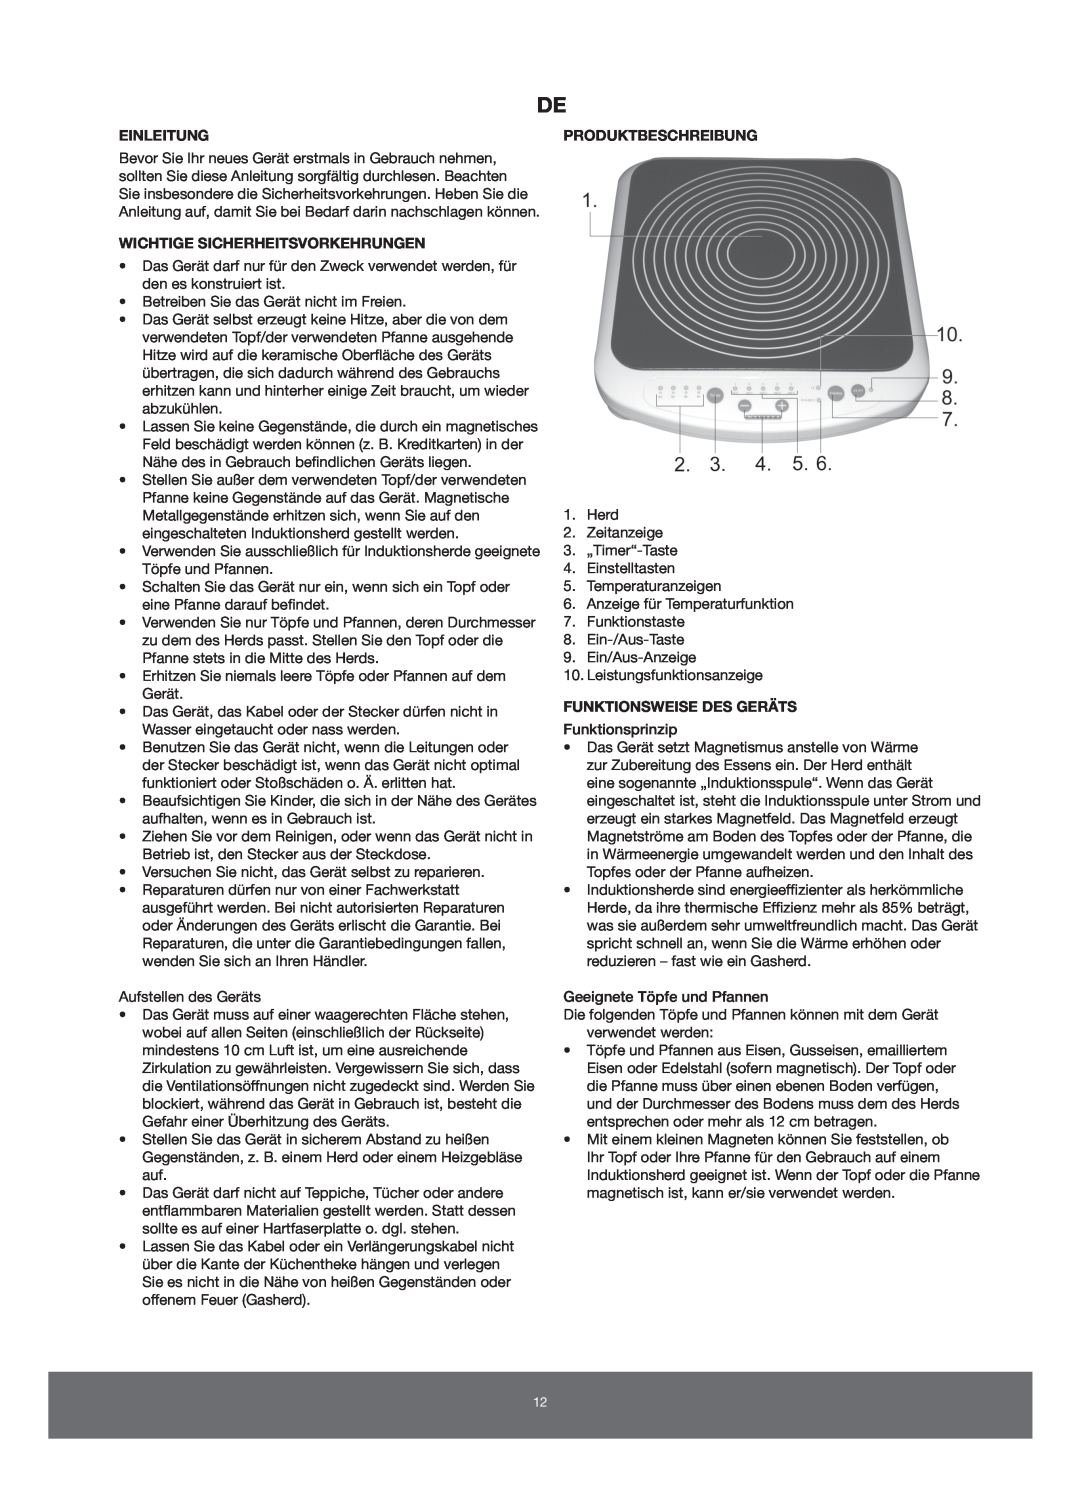 Melissa 650-005 manual Einleitung, Wichtige Sicherheitsvorkehrungen, Produktbeschreibung, Funktionsweise Des Geräts 